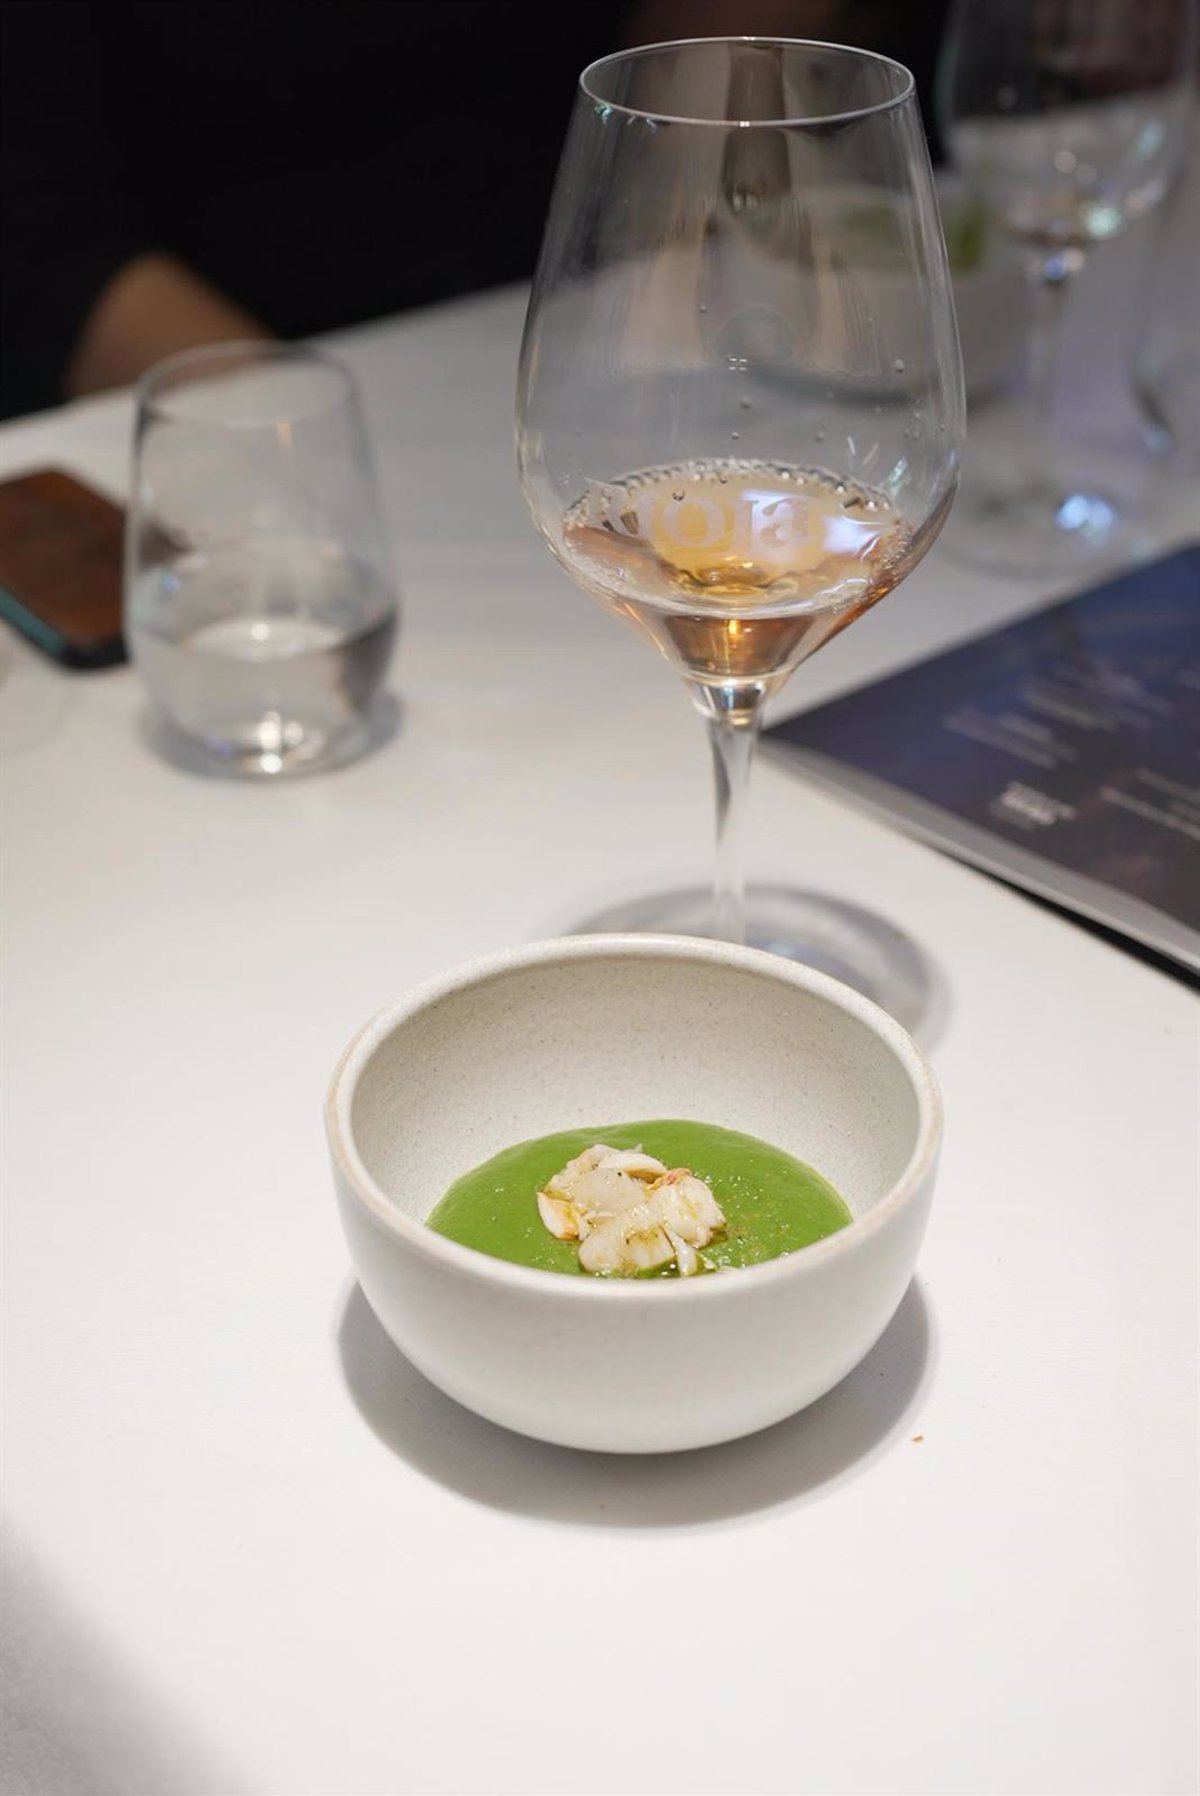 Rioja acerca de nuevo a España alta cocina internacional, maridando la propuesta de chef británico Merlin Labron-Johnson